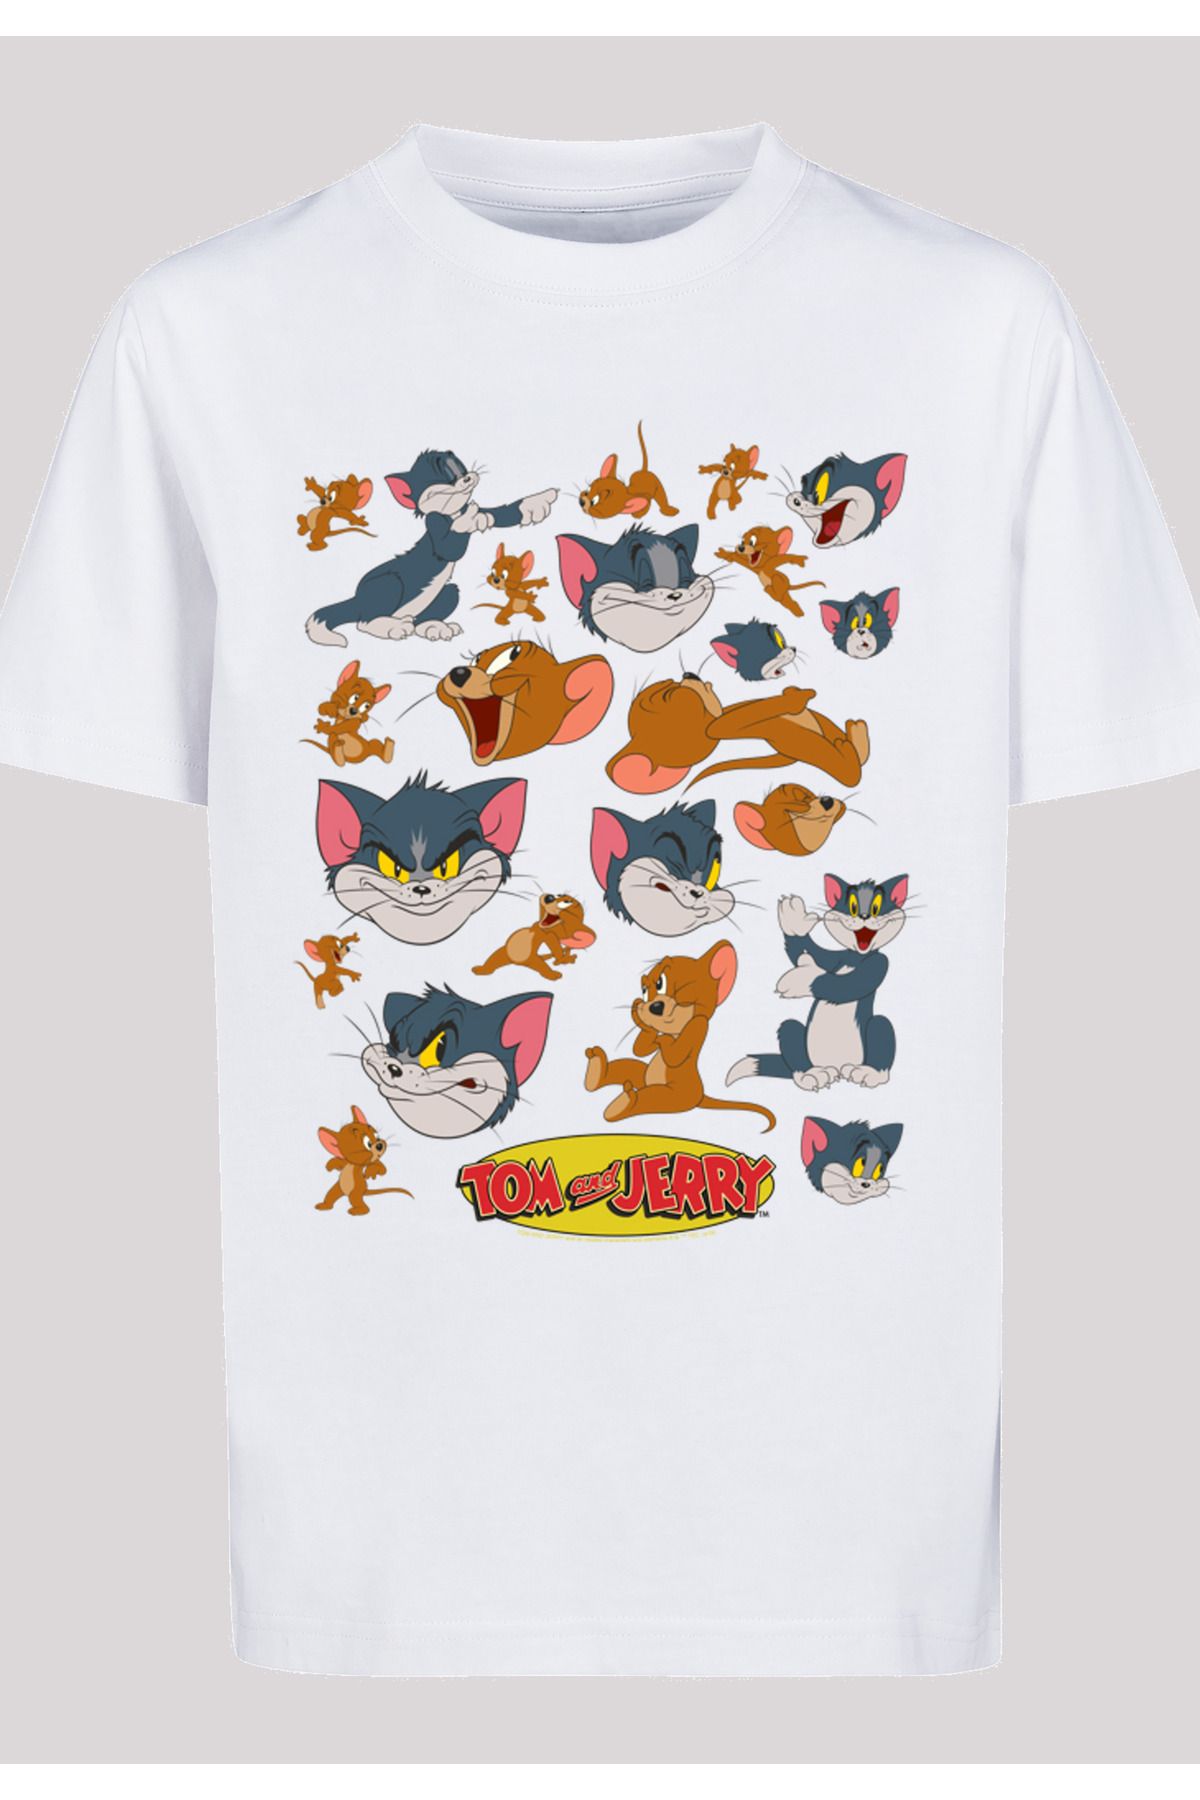 Kinder mit vielen Gesichtern mit Trendyol Kinder-Basic-T-Shirt F4NT4STIC Jerry und Tom und - und Jerry Tom